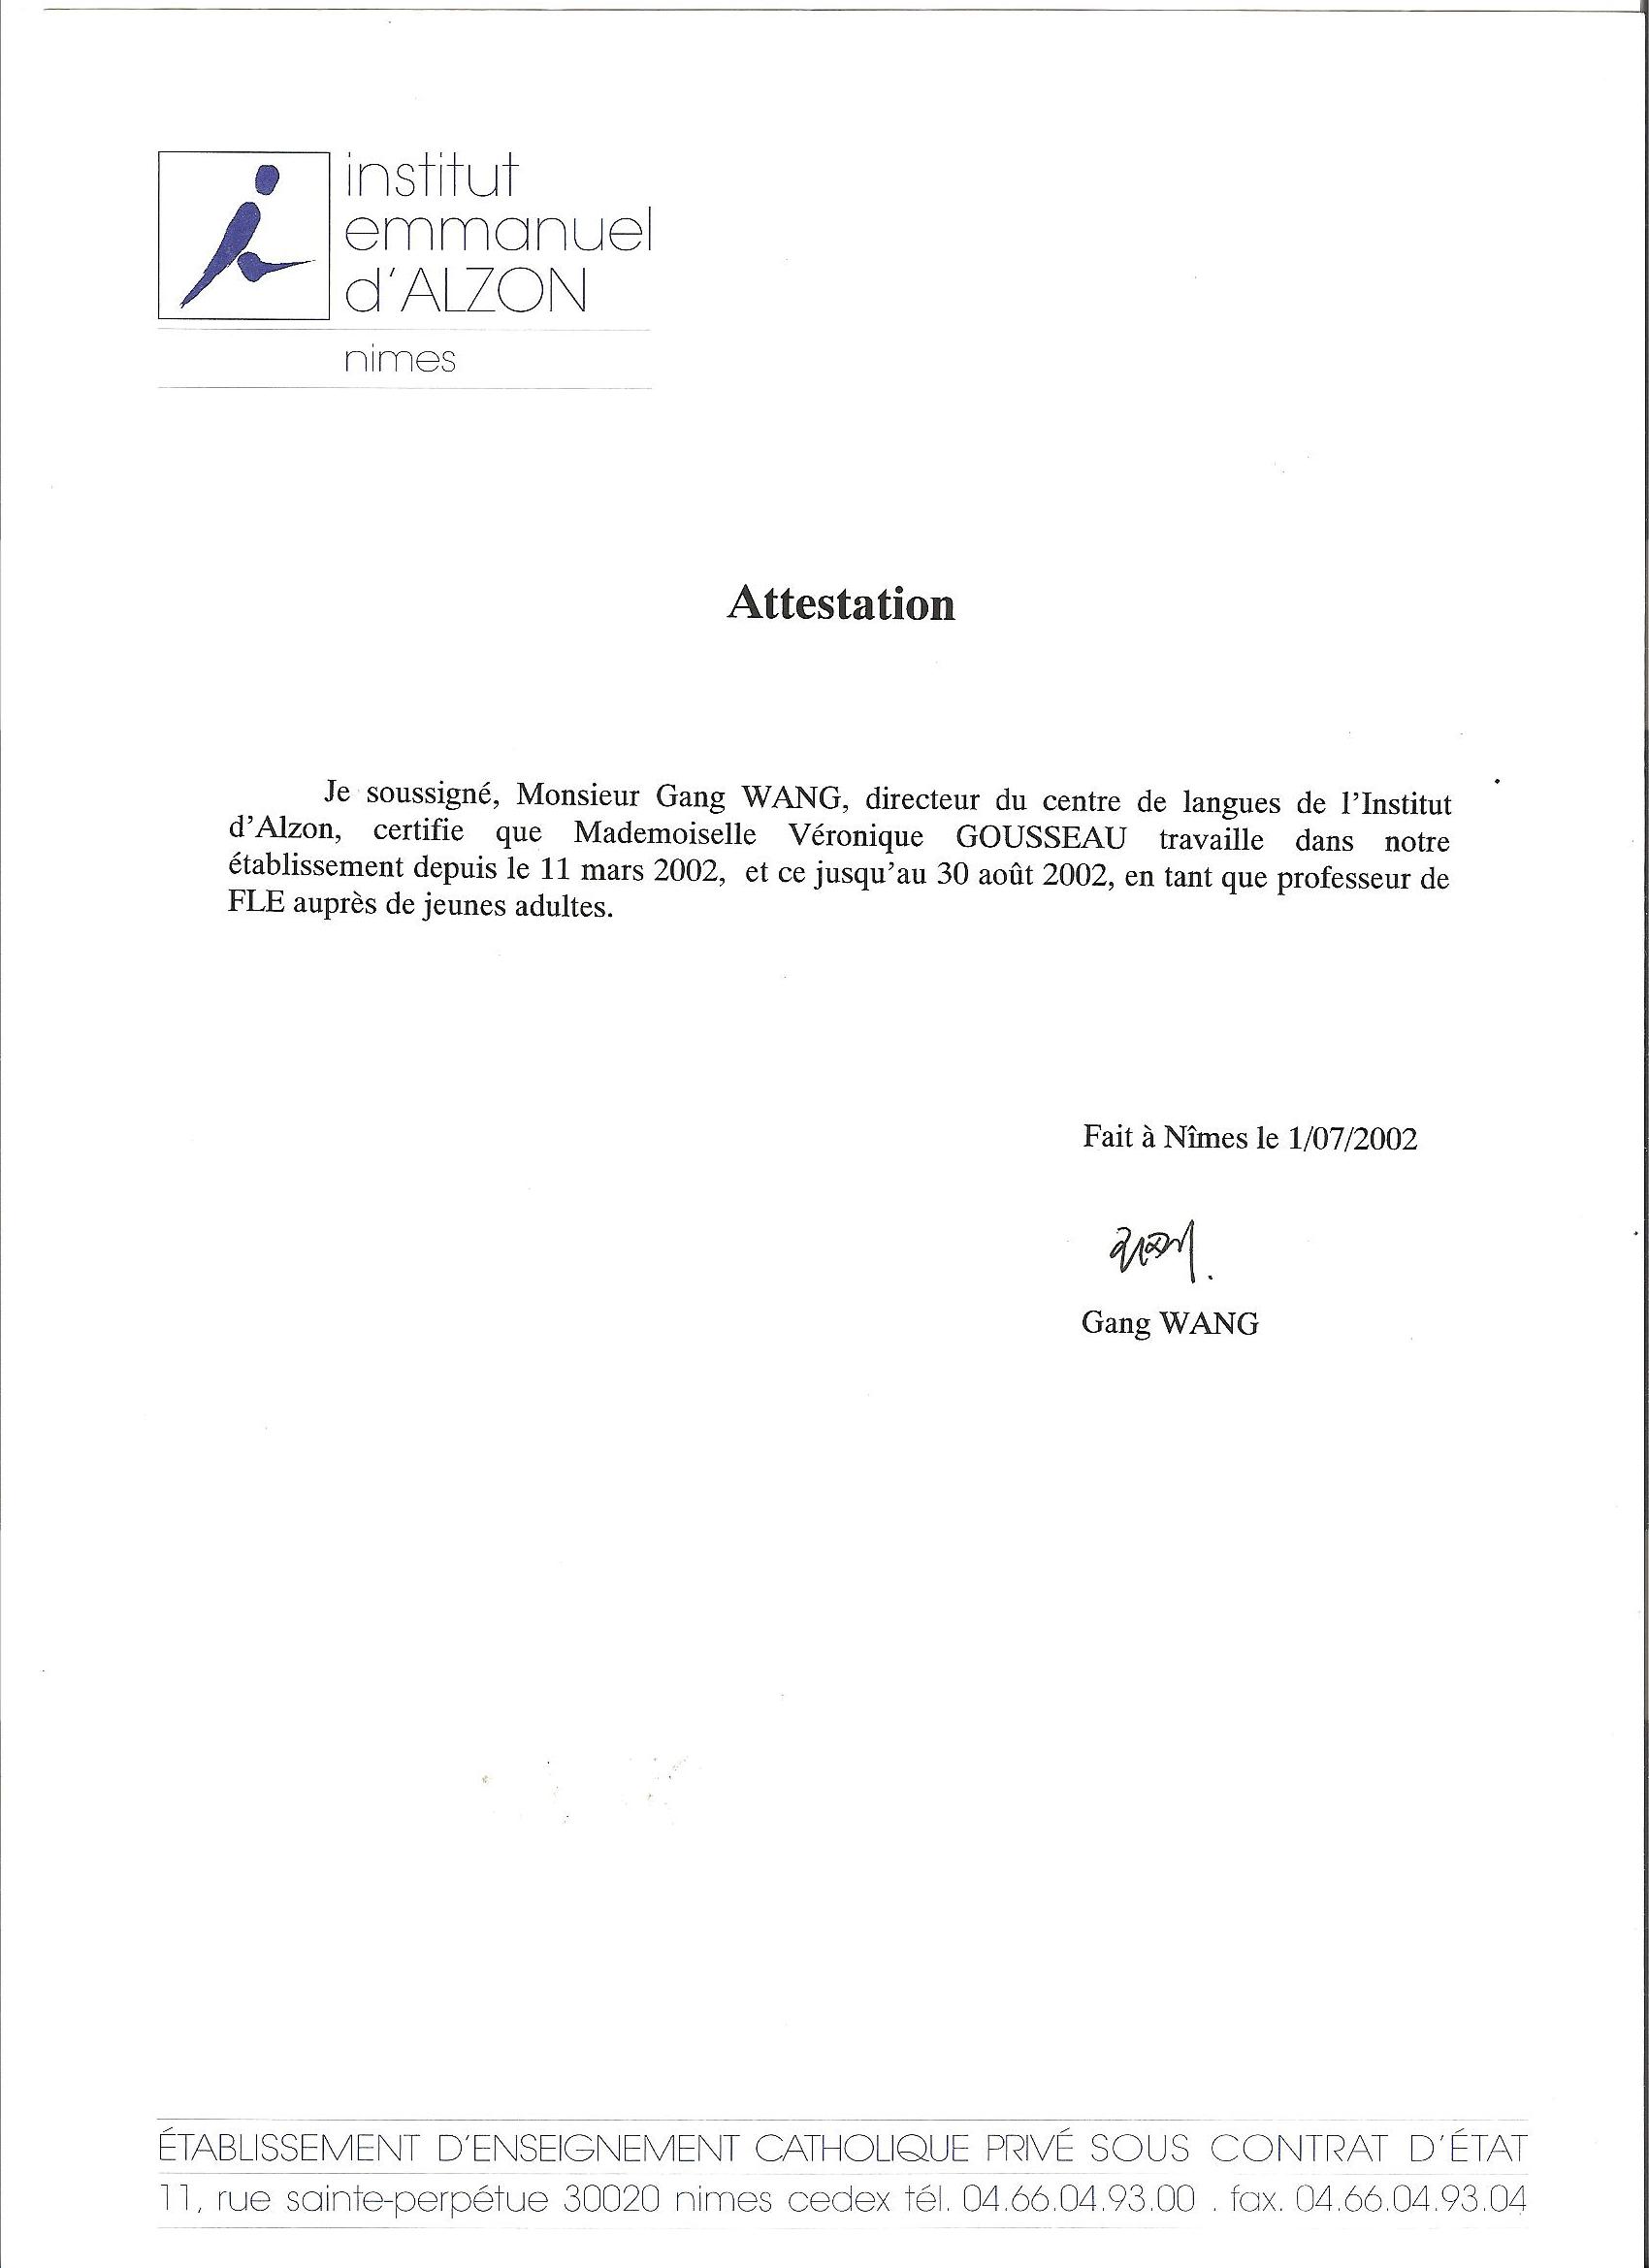 sample cover letter  attestation de travail modele de lettre